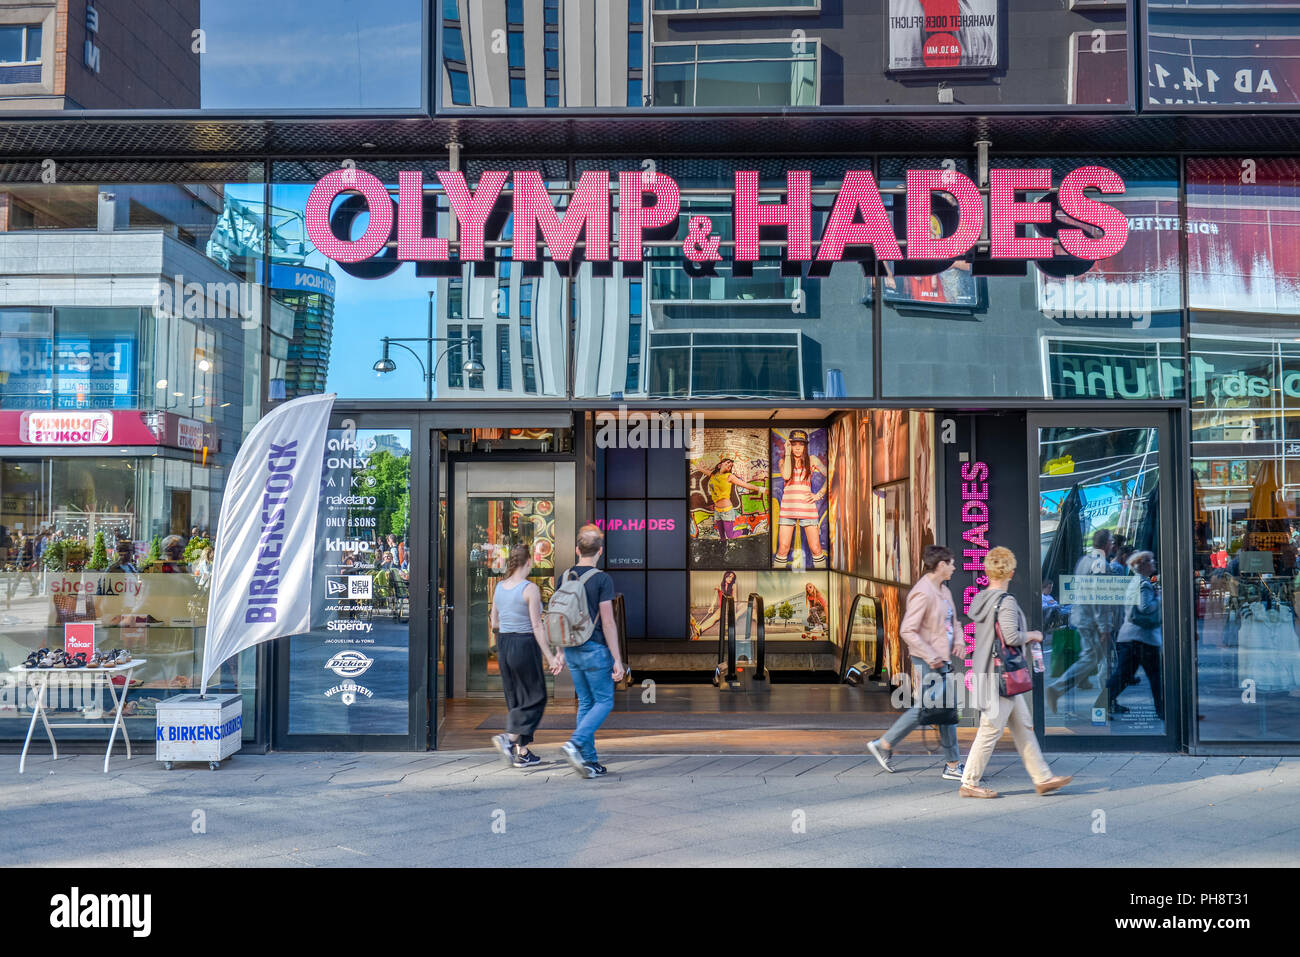 Olymp & Hades, Alexanderplatz, Mitte, Berlin, Deutschland Stockfotografie -  Alamy